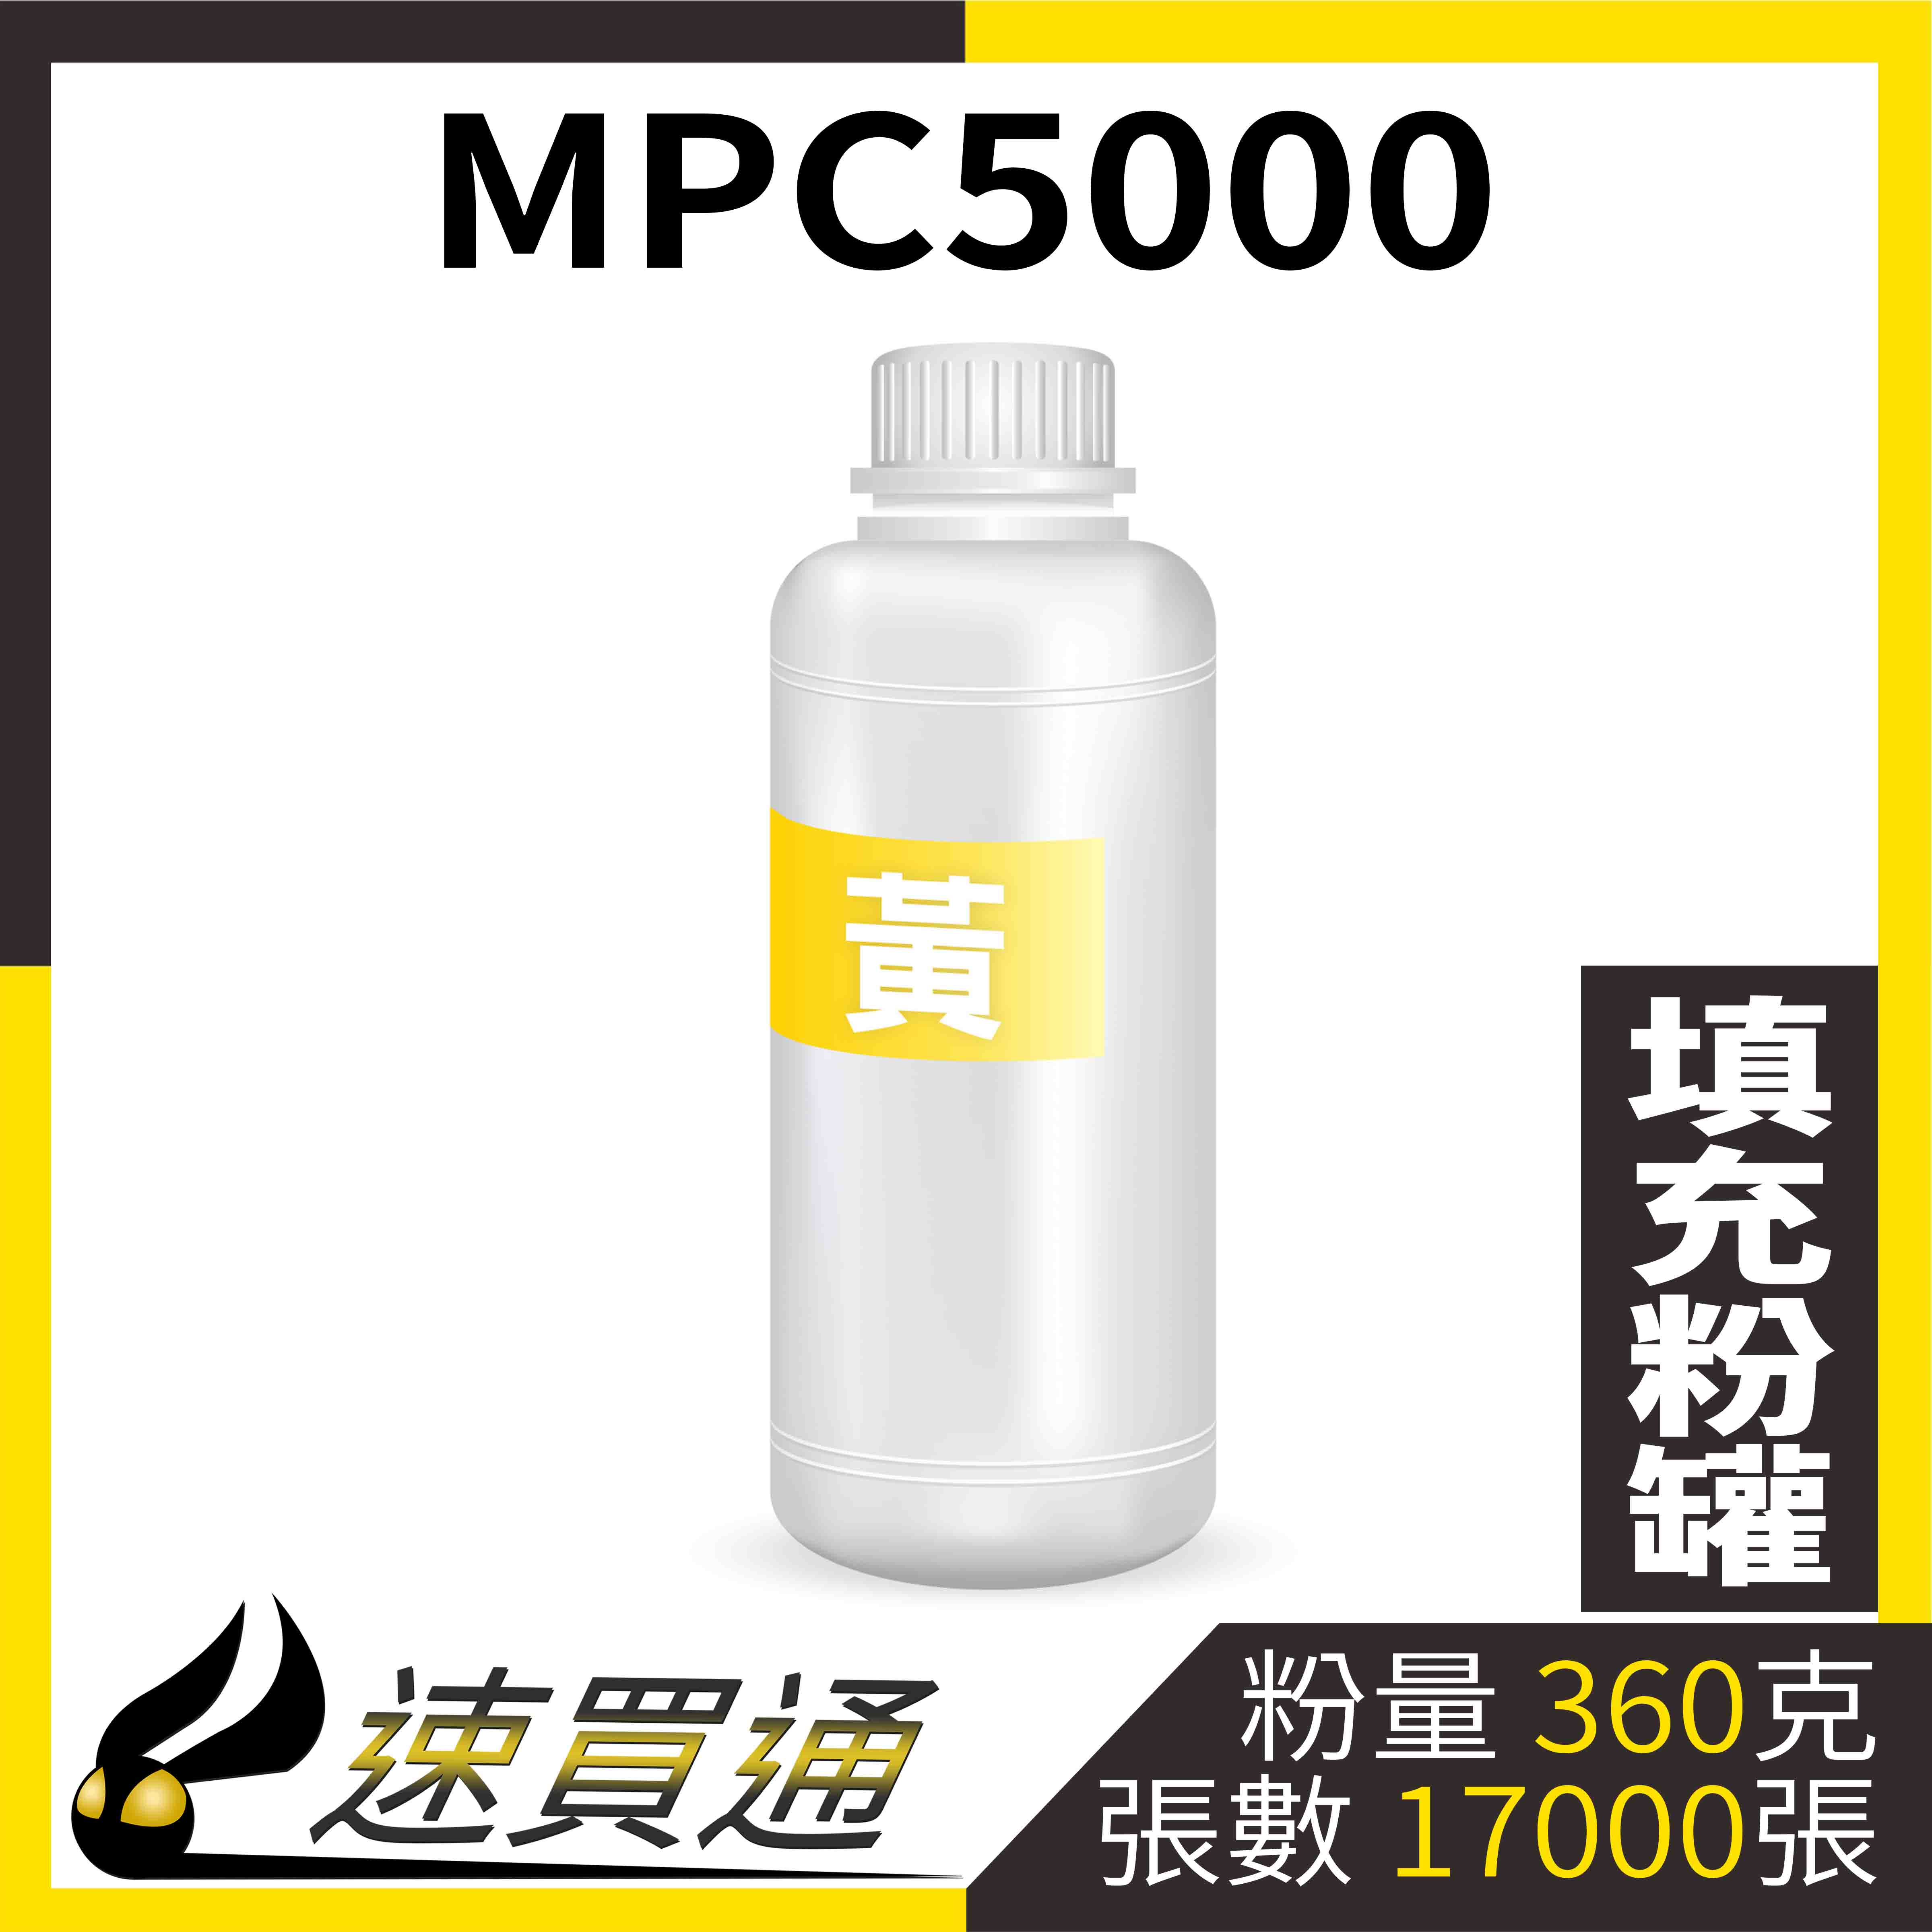 【速買通】RICOH MPC5000 黃 填充式碳粉罐